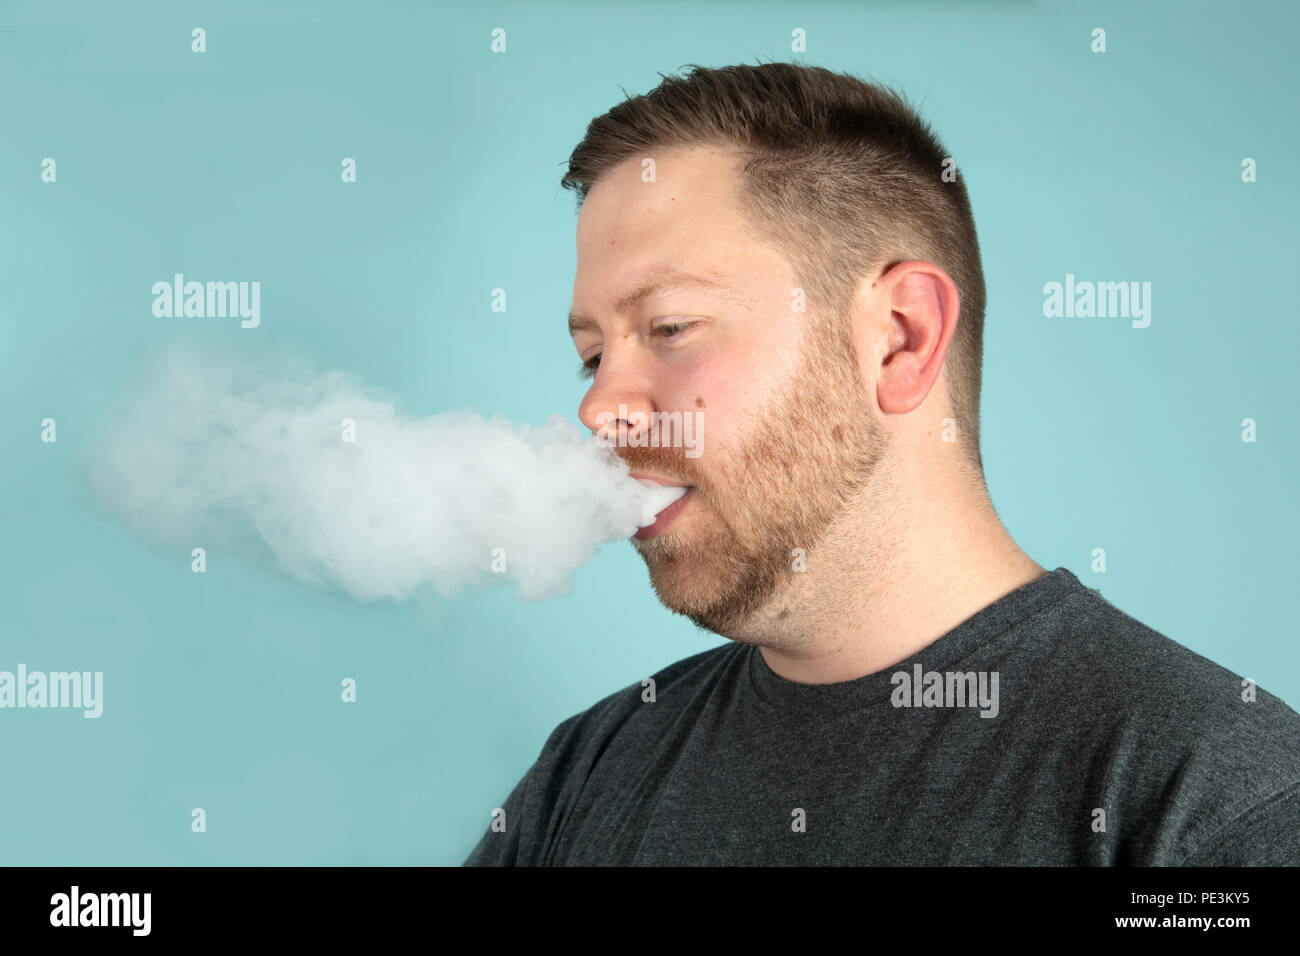 Jeune homme seine avec un nuage de fumée masquant son visage sur un fond gris en studio Banque D'Images